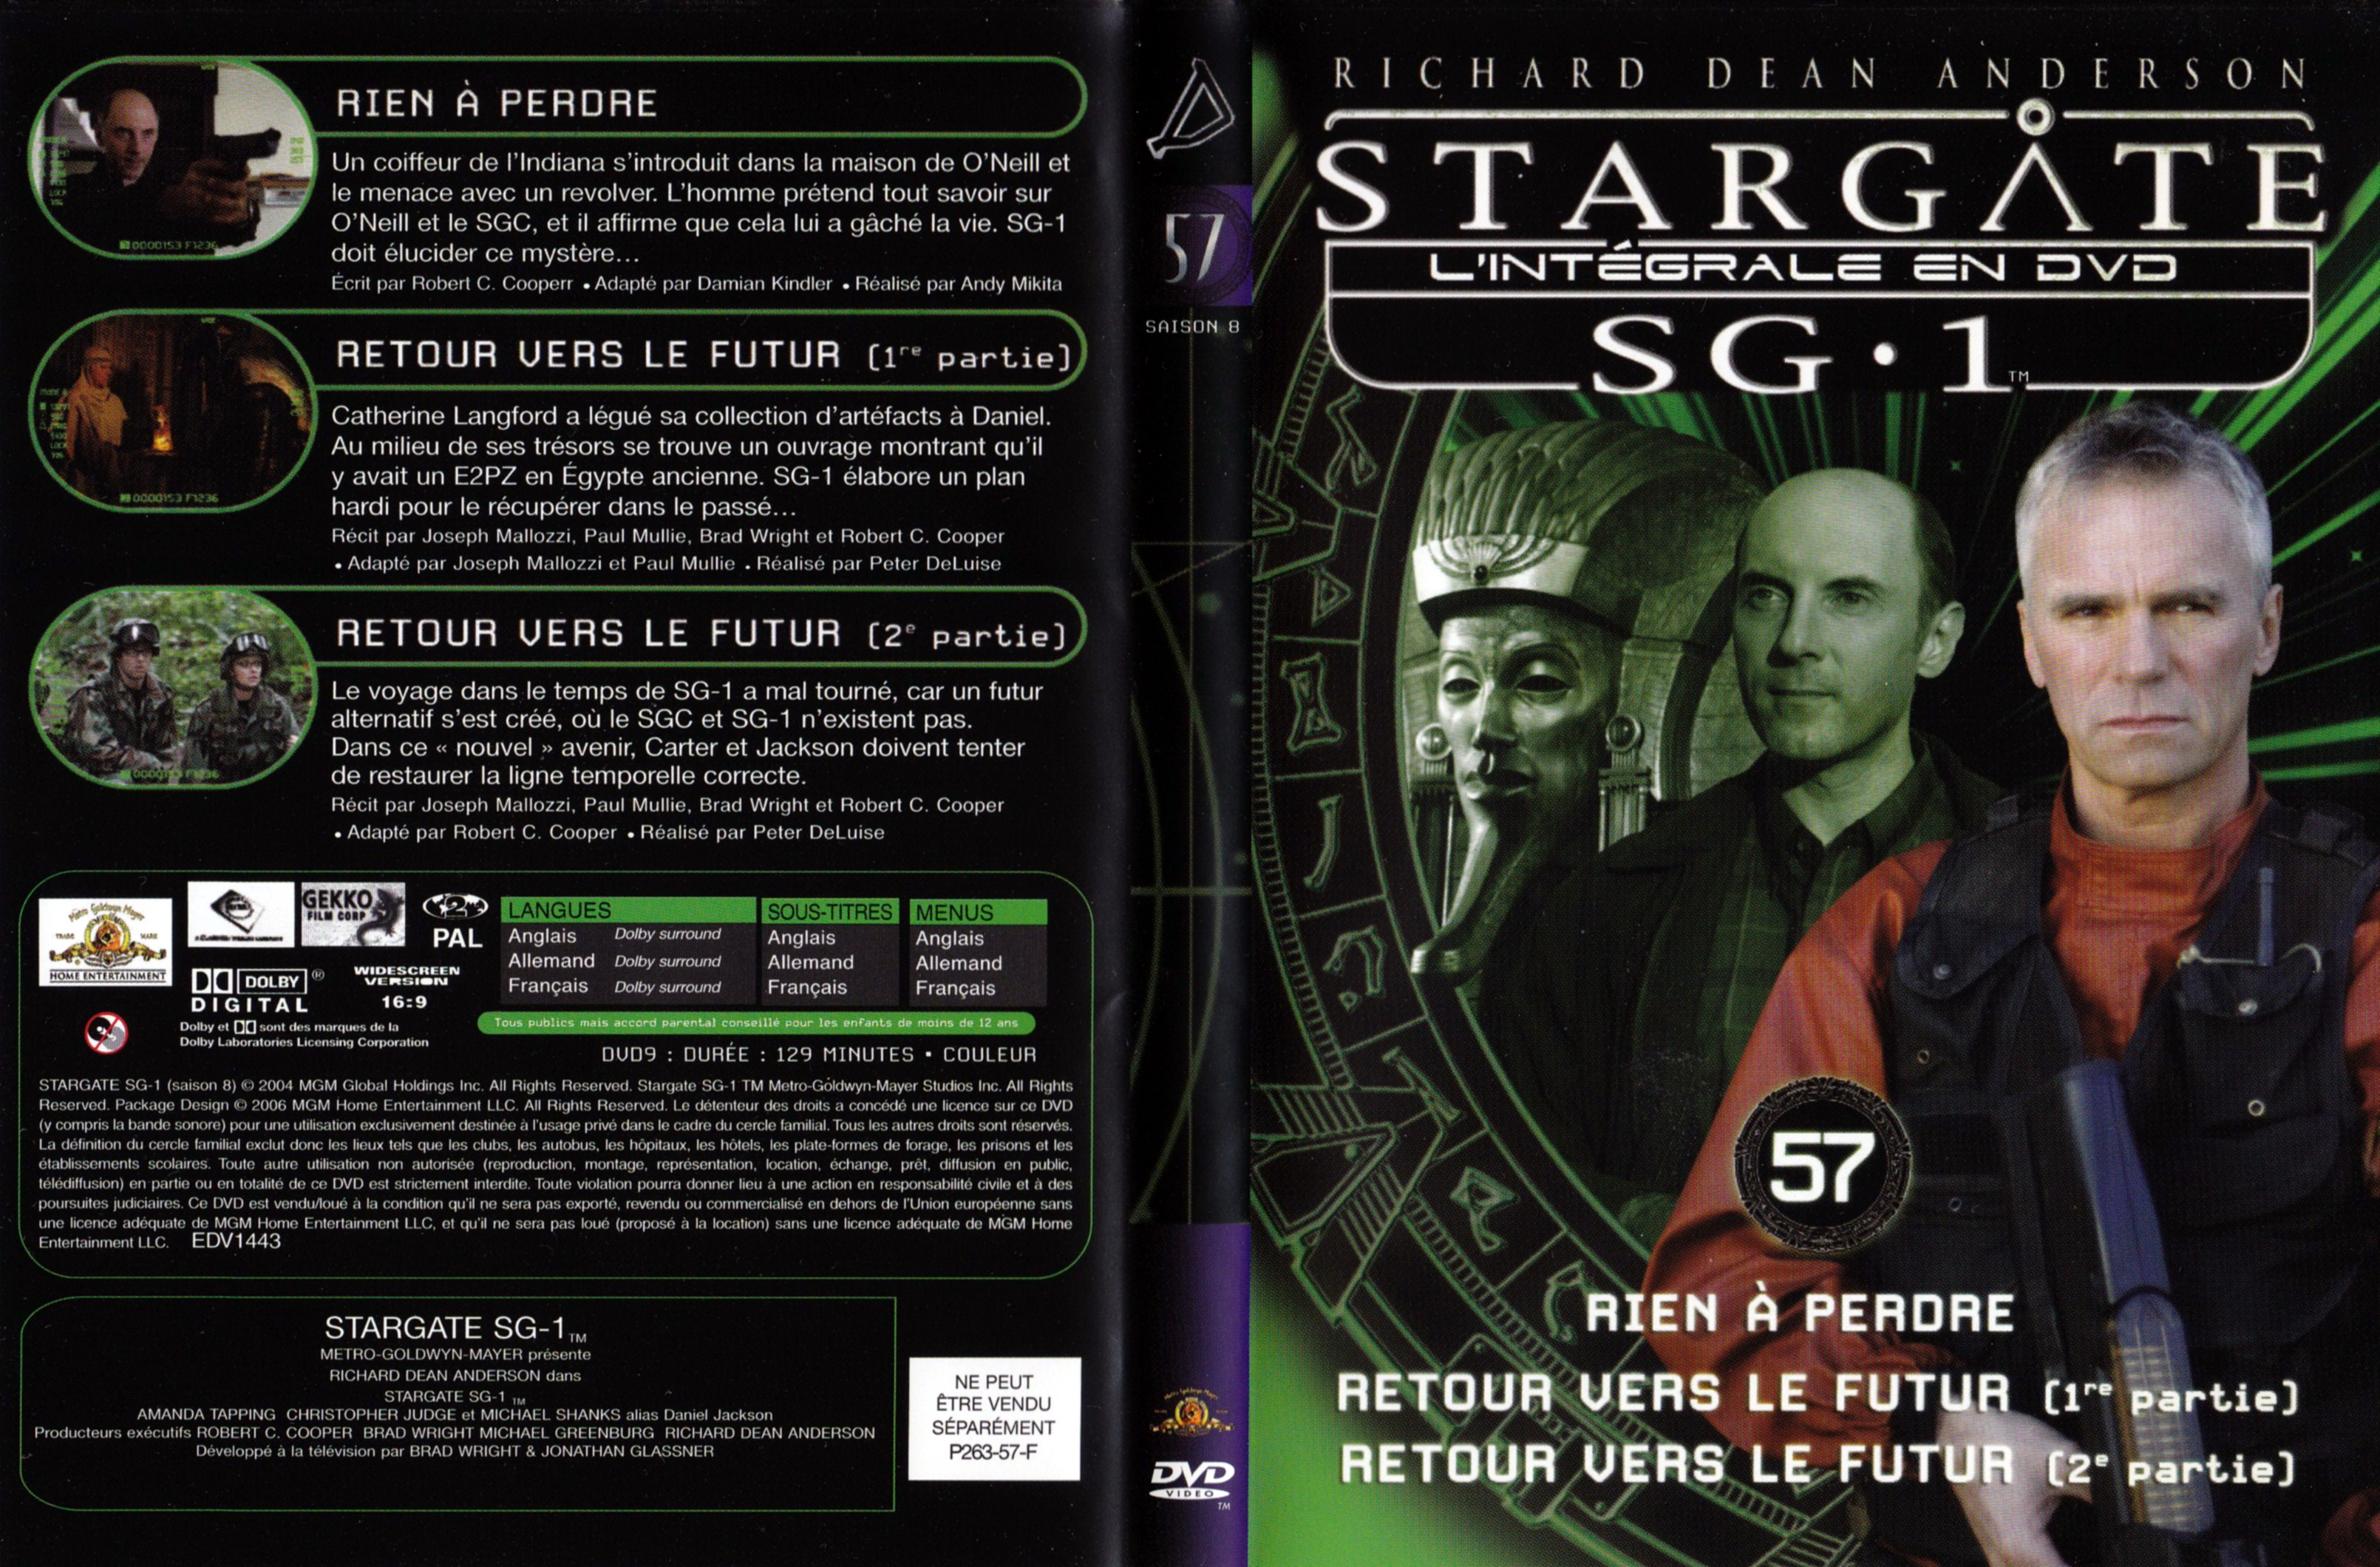 Jaquette DVD Stargate SG1 Intgrale Saison 8 vol 57